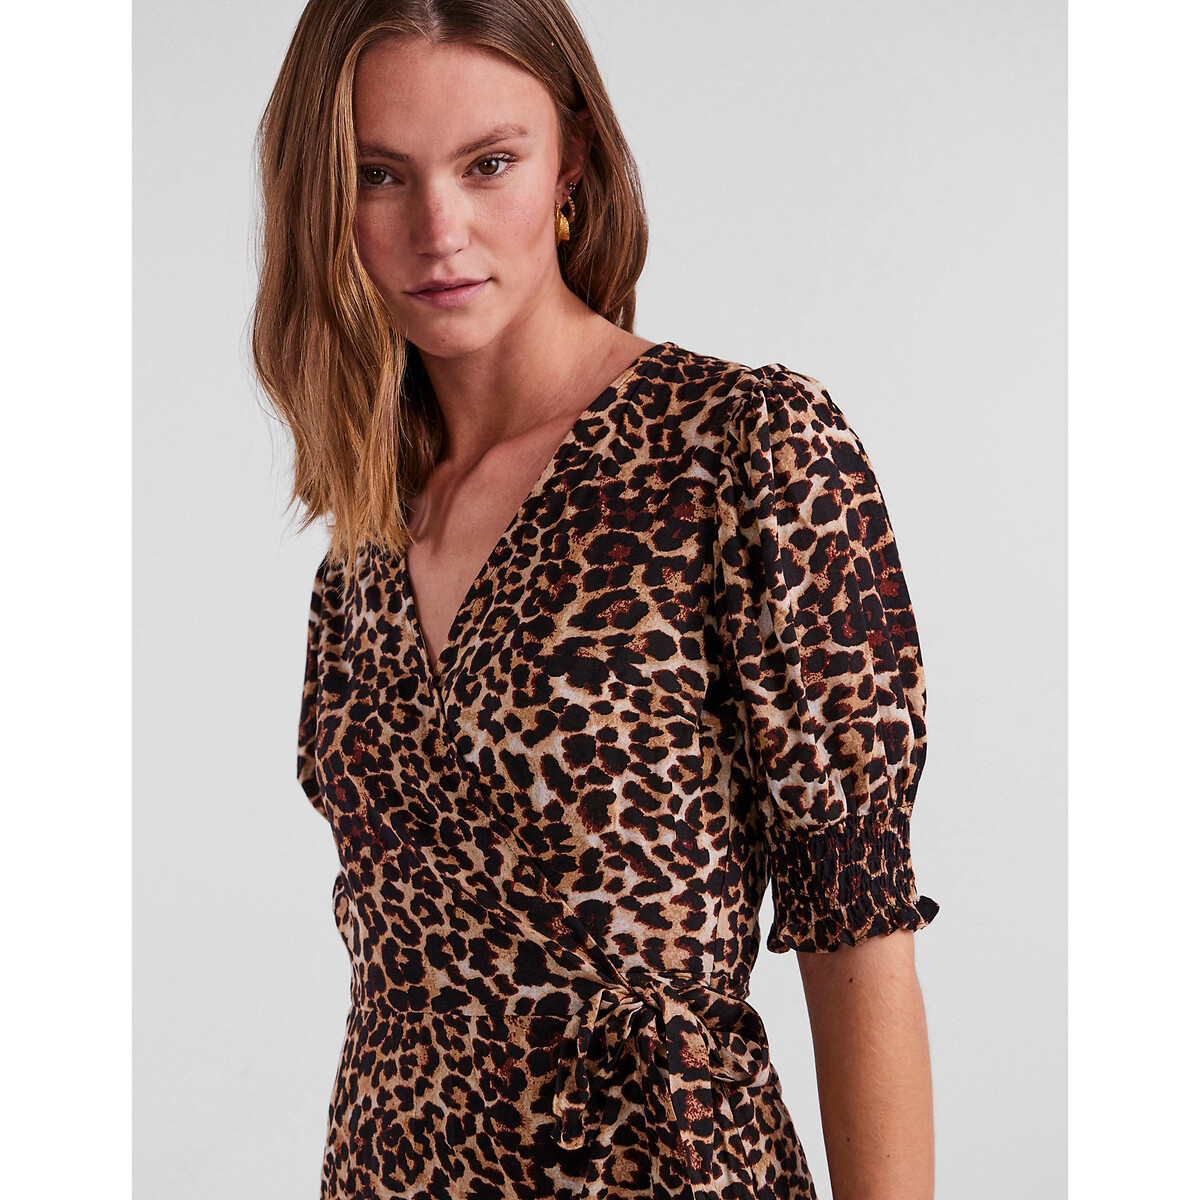 Платье С запахом и леопардовым принтом XL другие LaRedoute, размер XL - фото 2